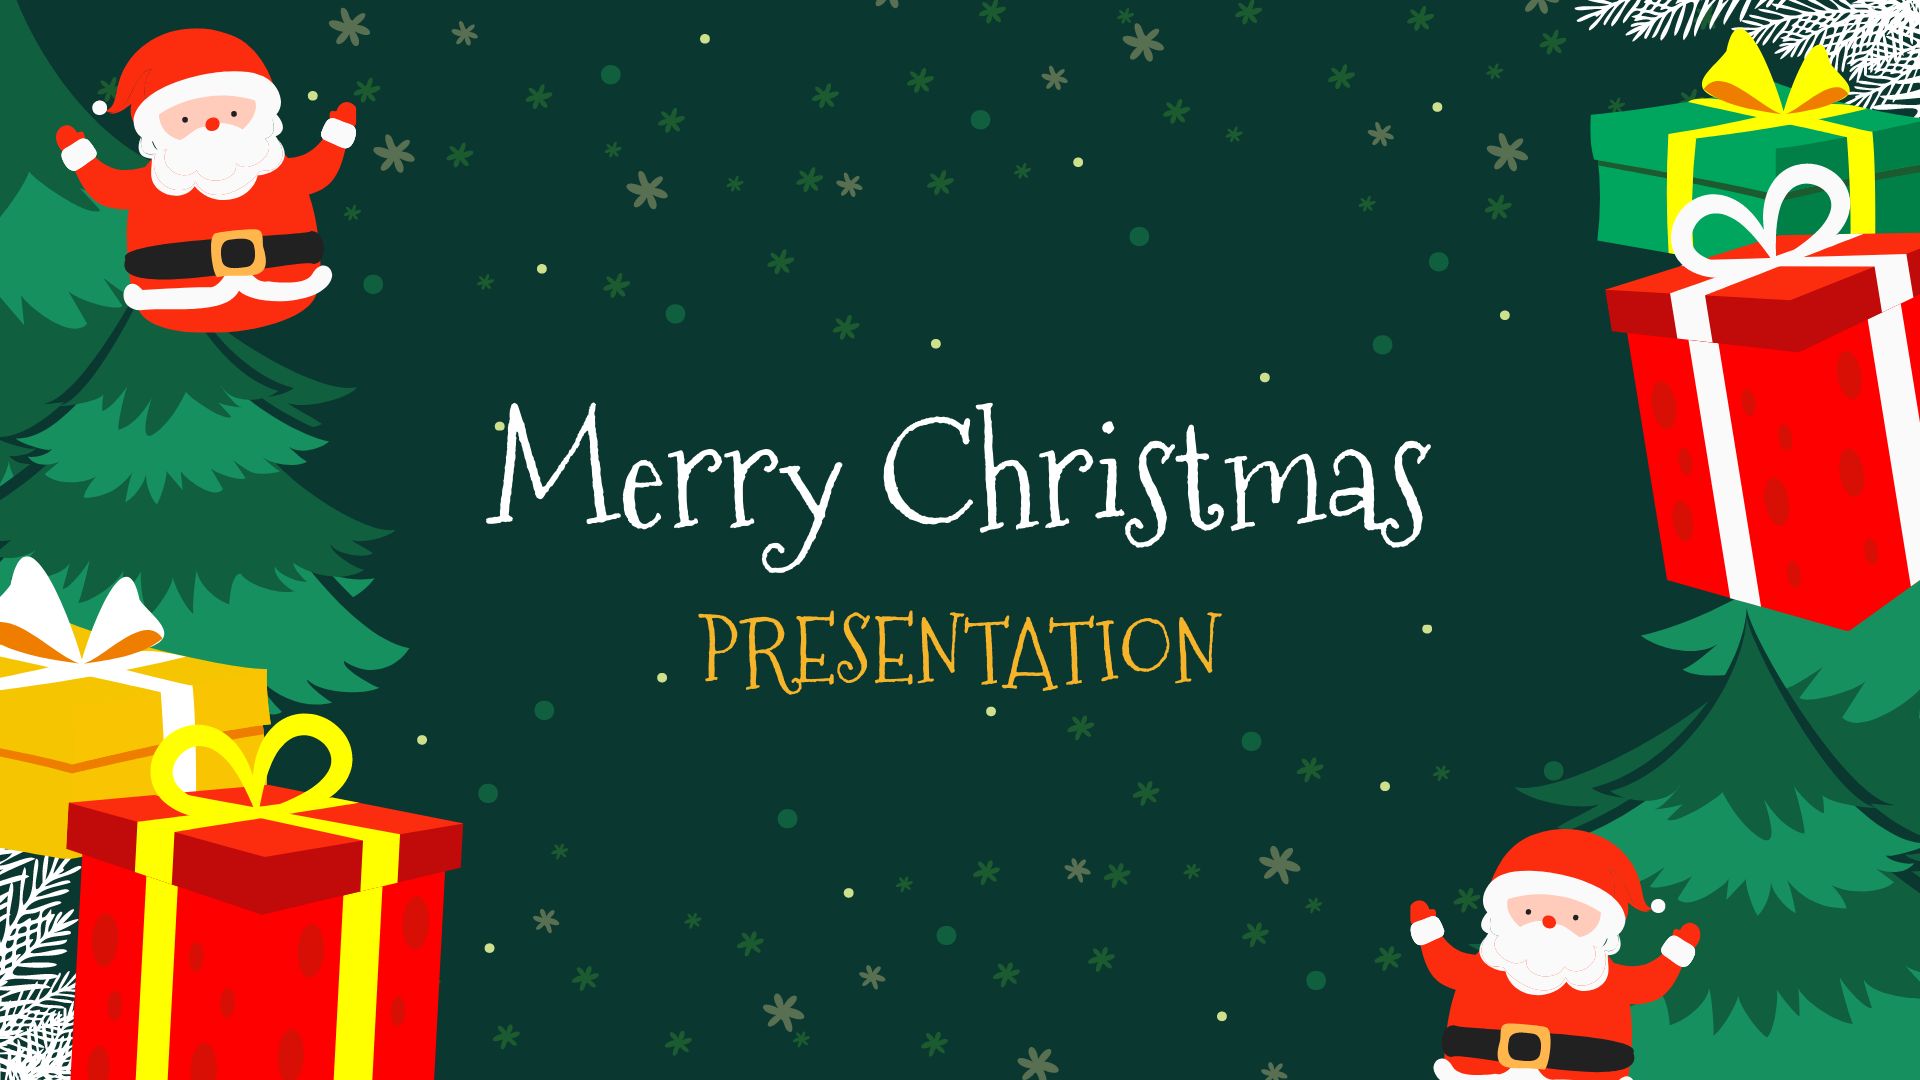 FREE Christmas Template - Download in Word, Google Docs, PDF, Illustrator, Photoshop, Apple Pages, PPT, Publisher, Google Slides, InDesign, Outlook, Apple Keynote, EPS, SVG, JPG, GIF, PNG, HTML, JPEG